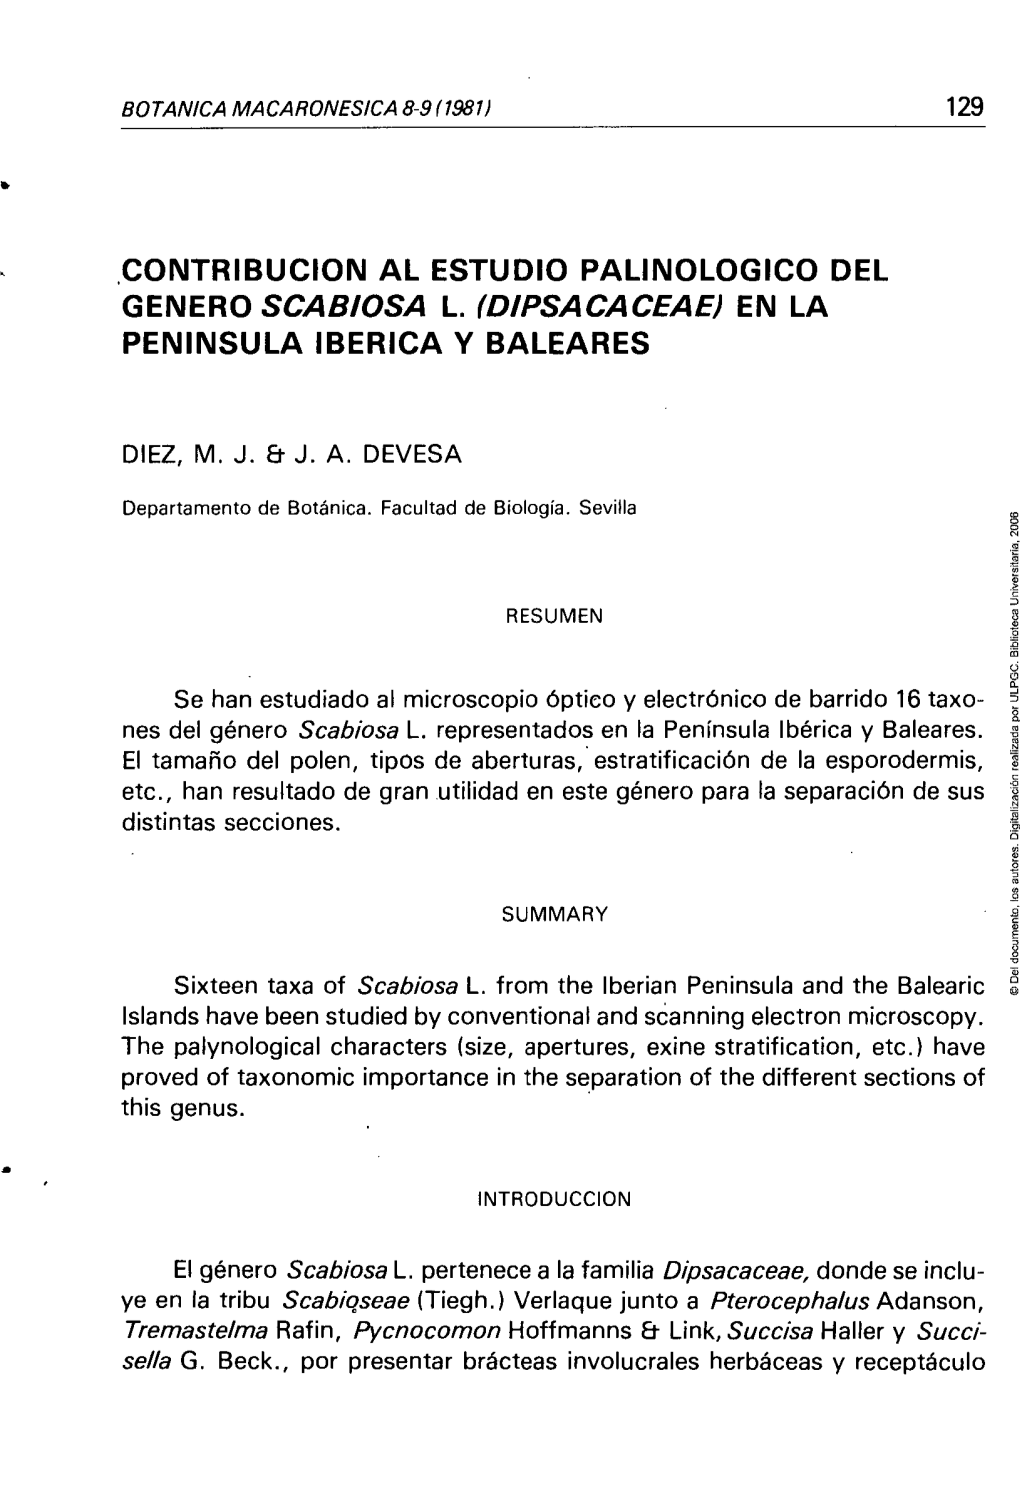 Dipsacaceae) En La Península Ibérica Y Baleares